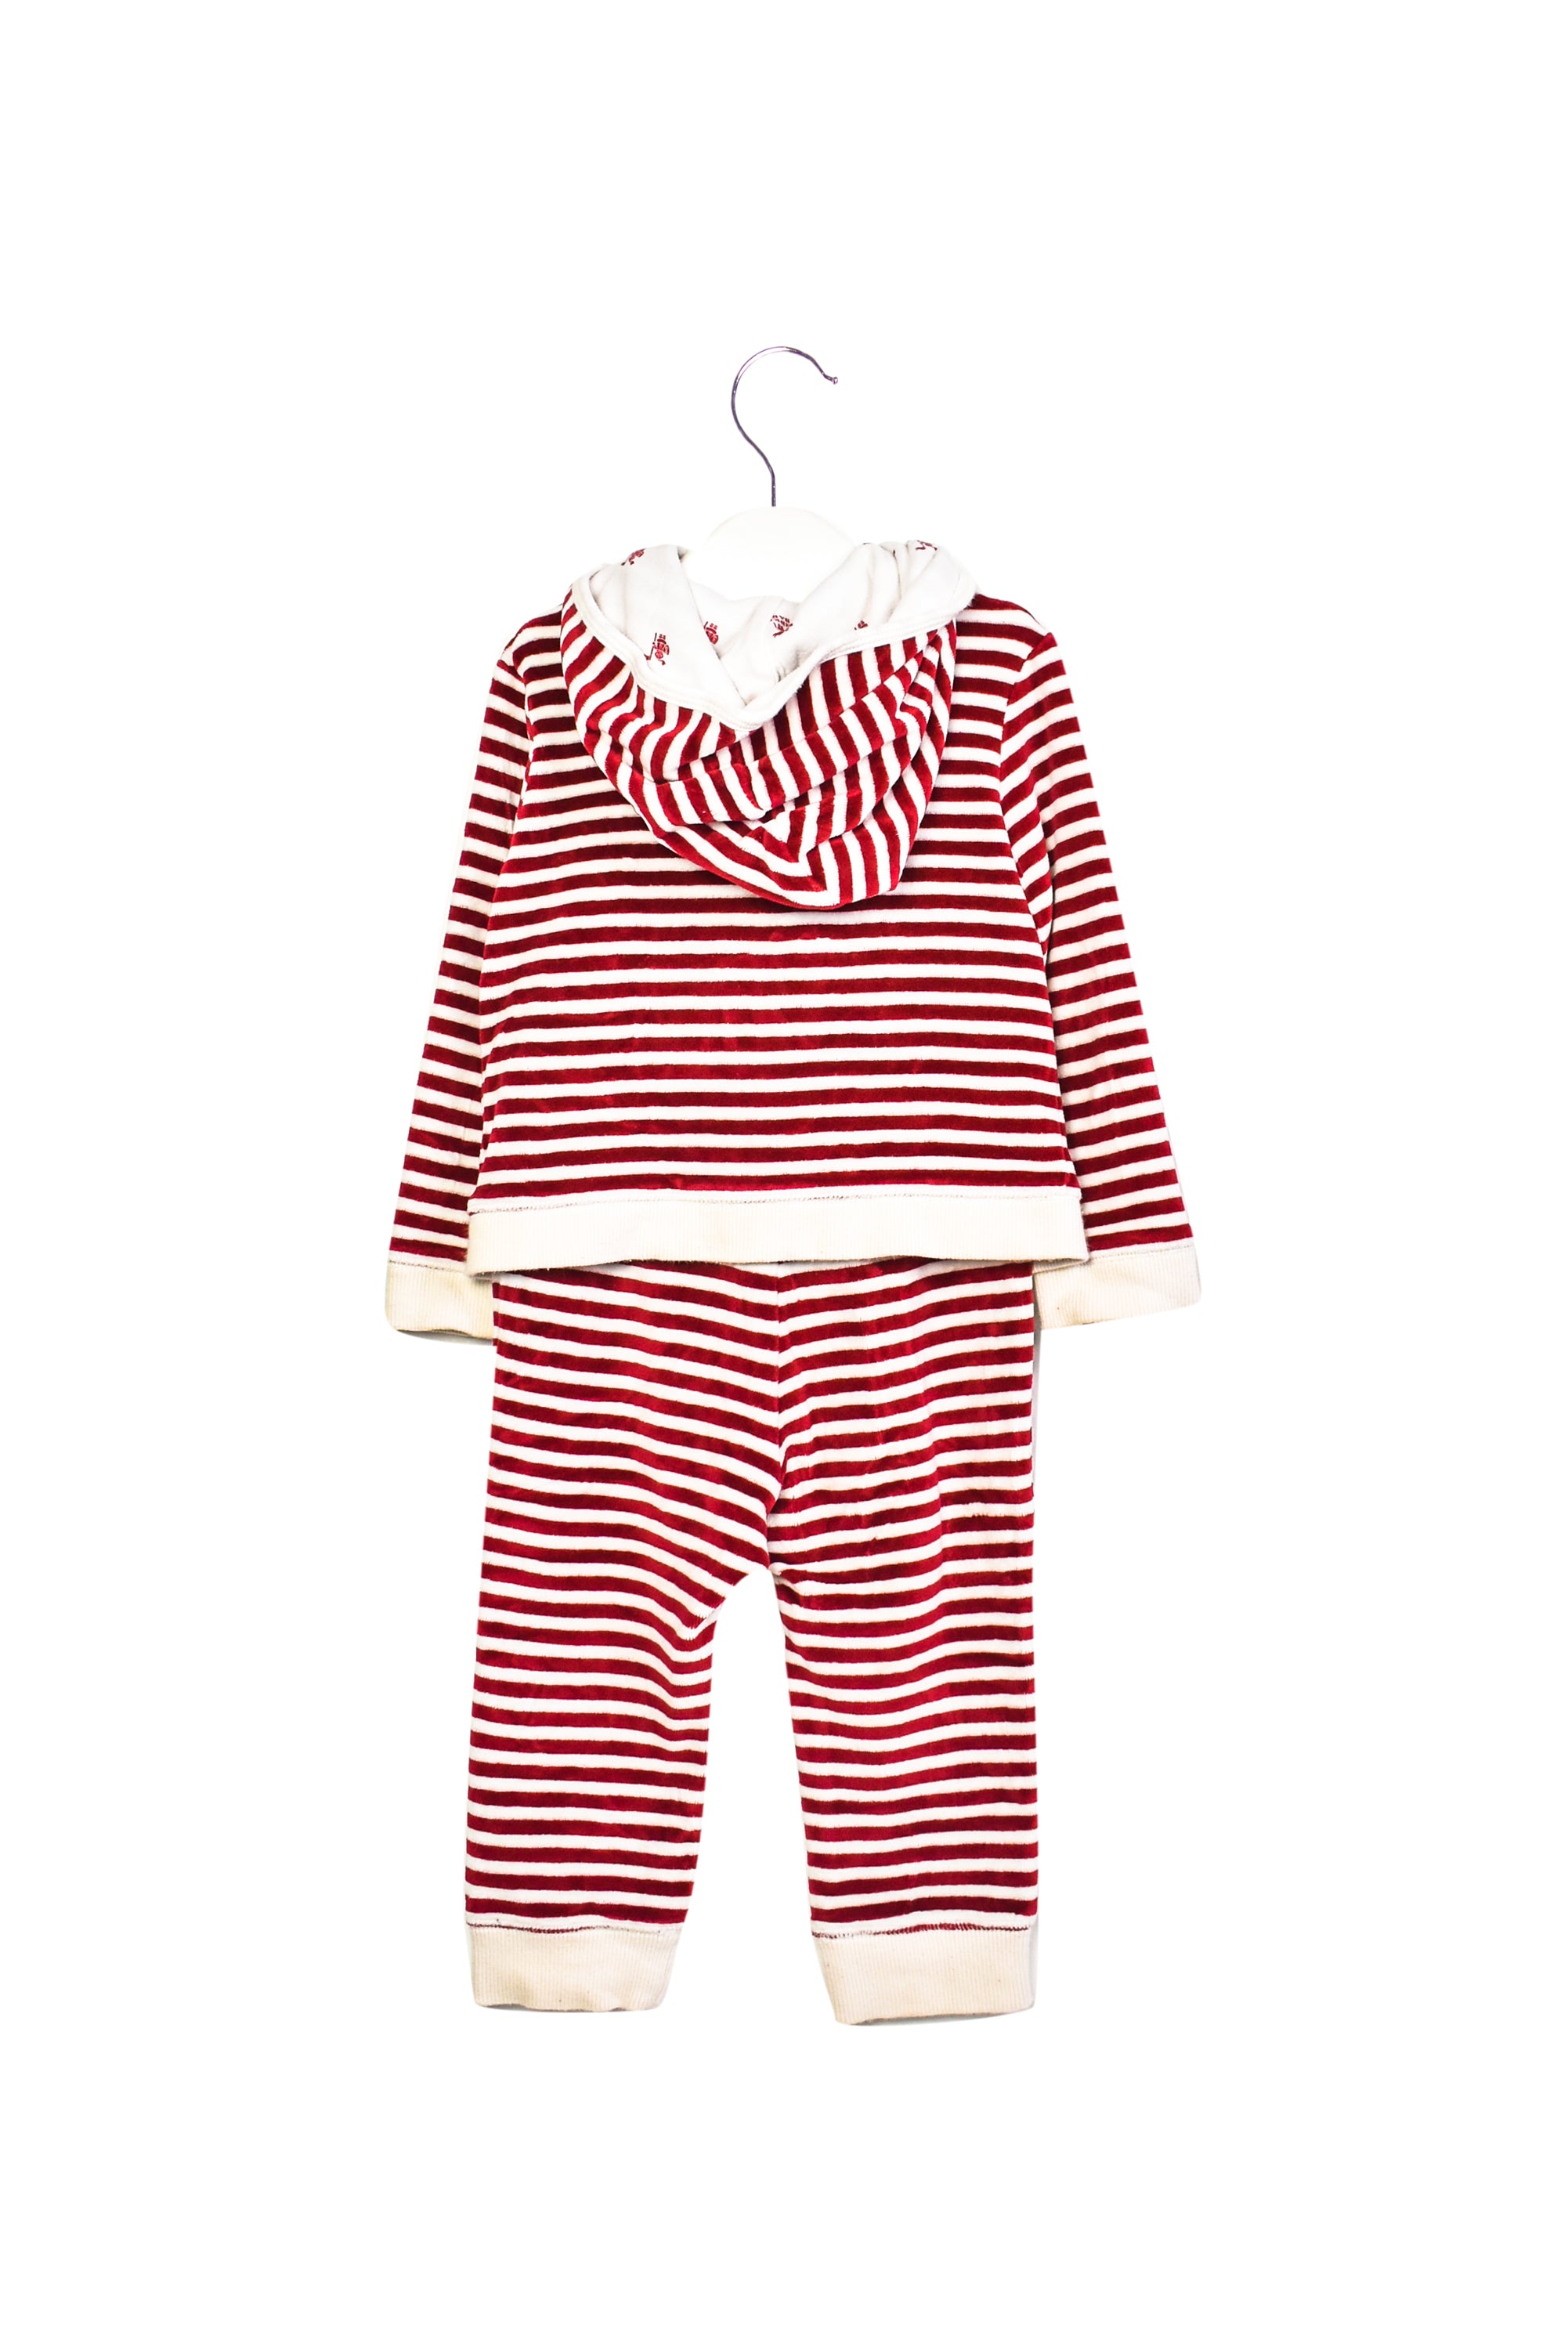 burberry baby pajamas